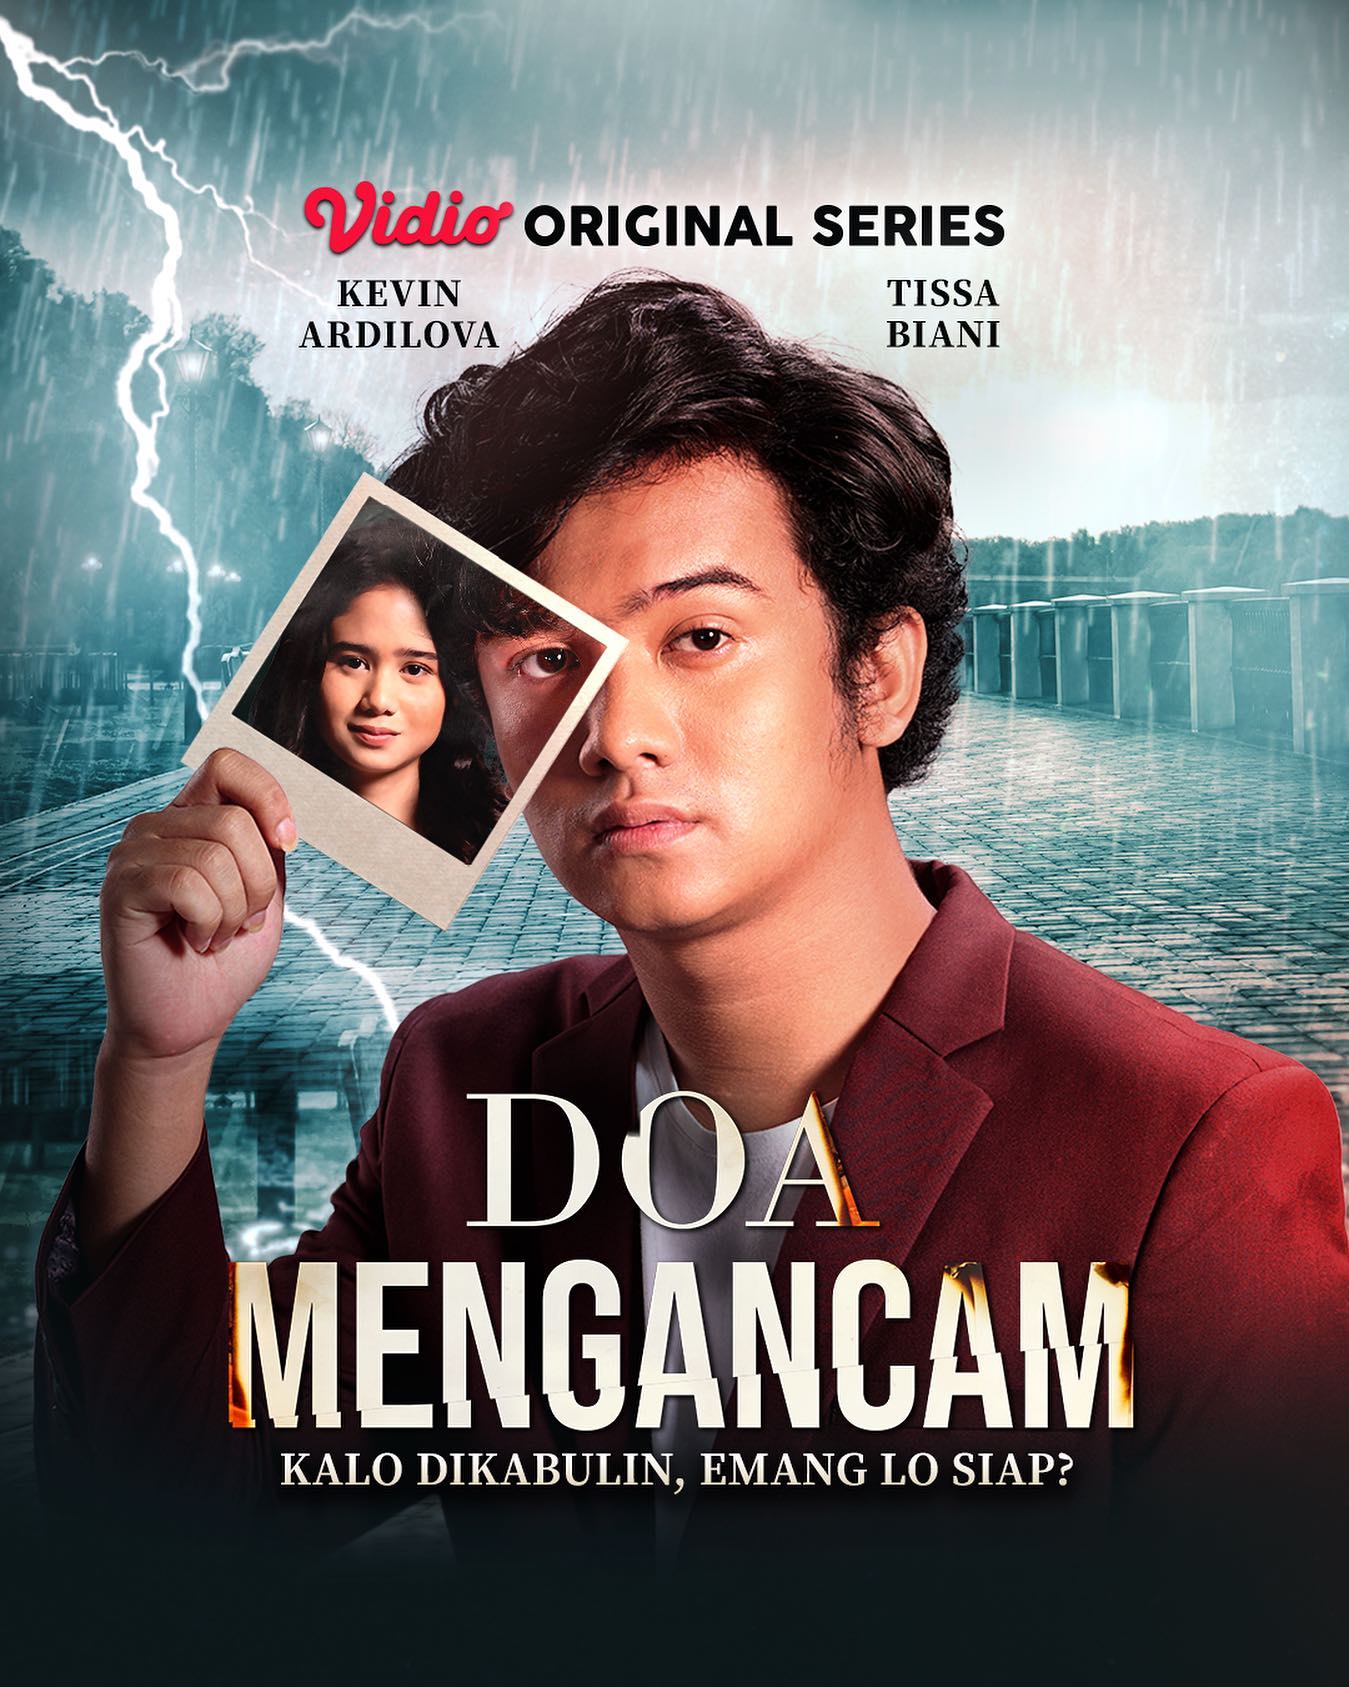 TV ratings for Doa Mengancam in India. Vidio TV series